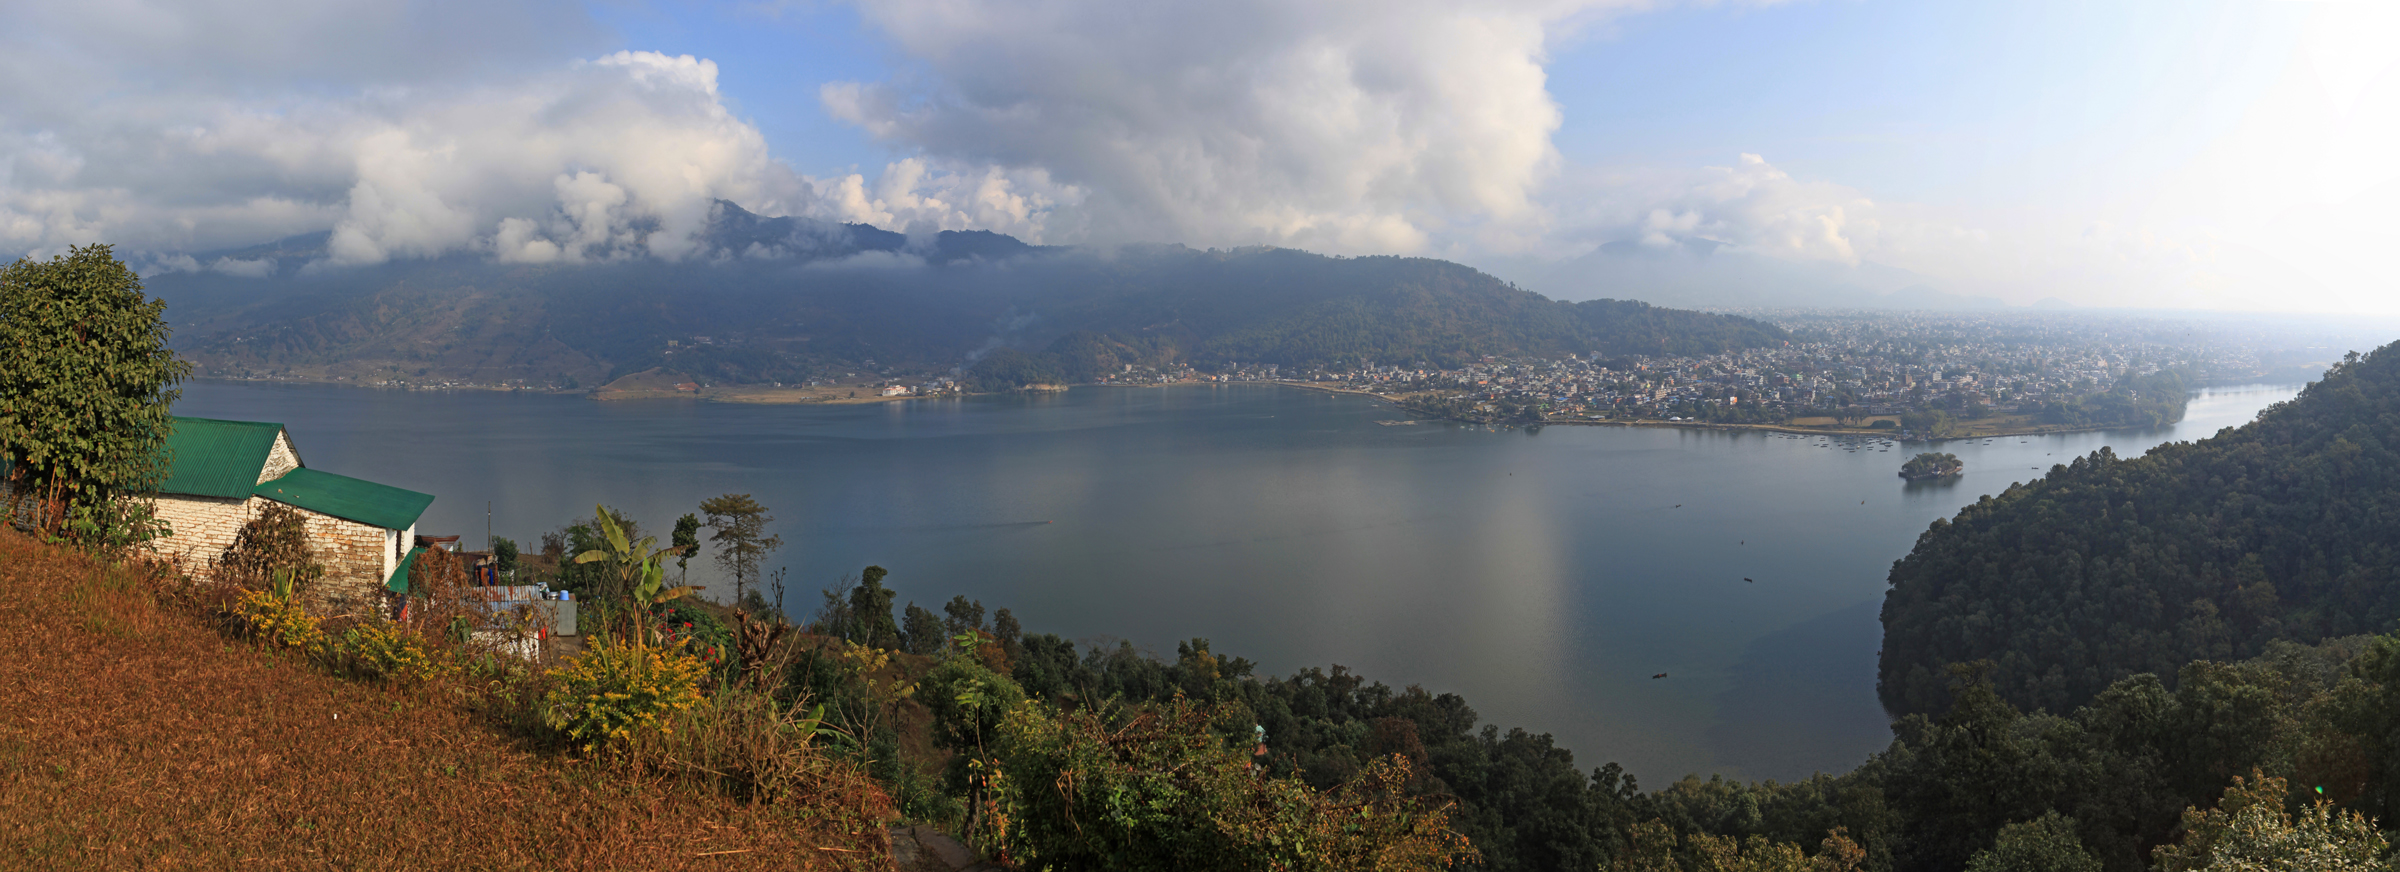 尼泊尔rara湖图片